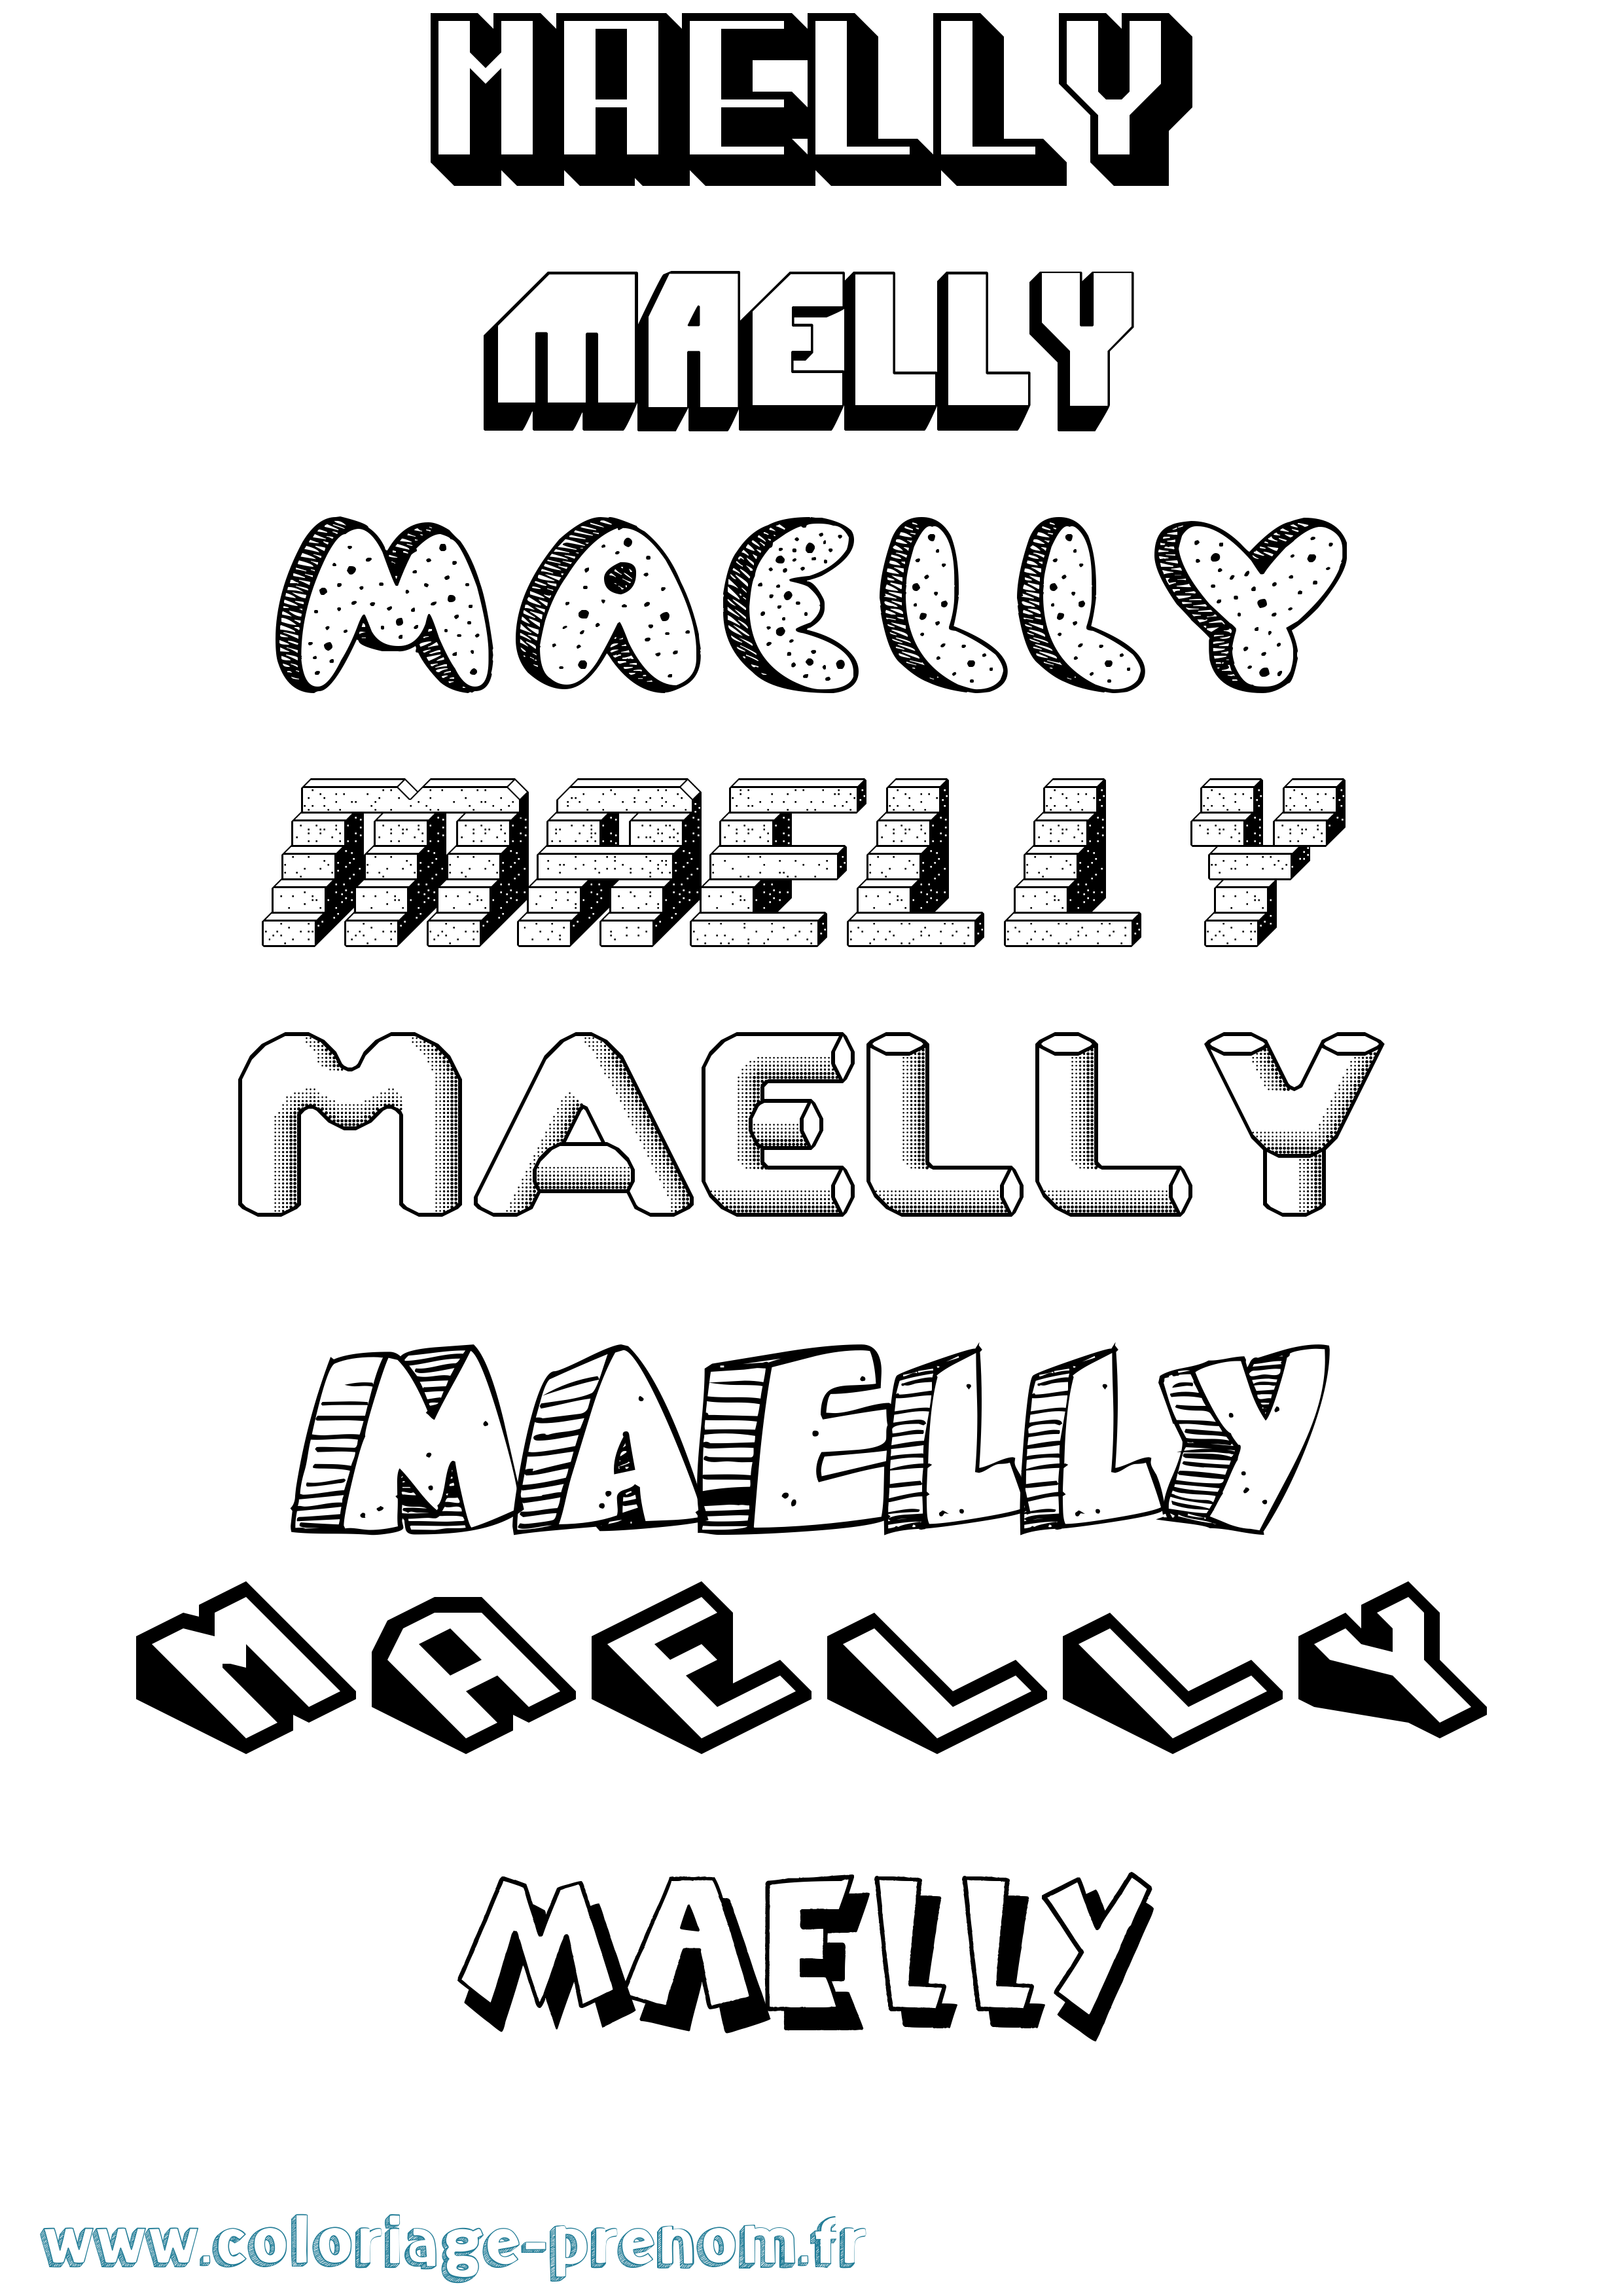 Coloriage prénom Maelly Effet 3D